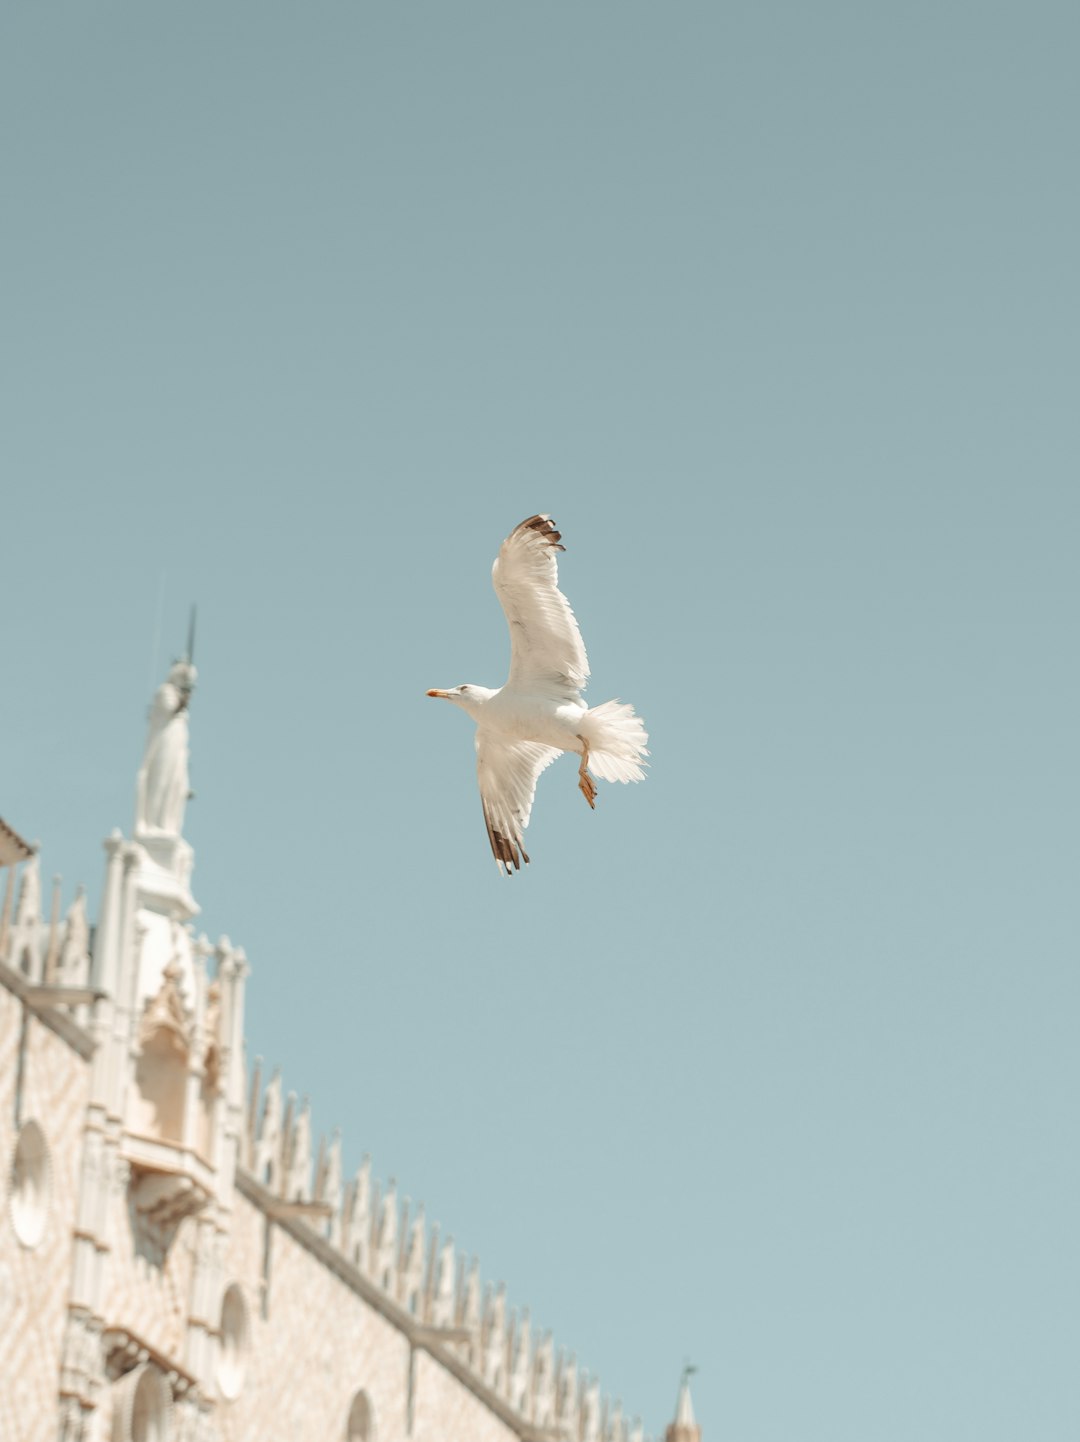 white bird flying over white building during daytime